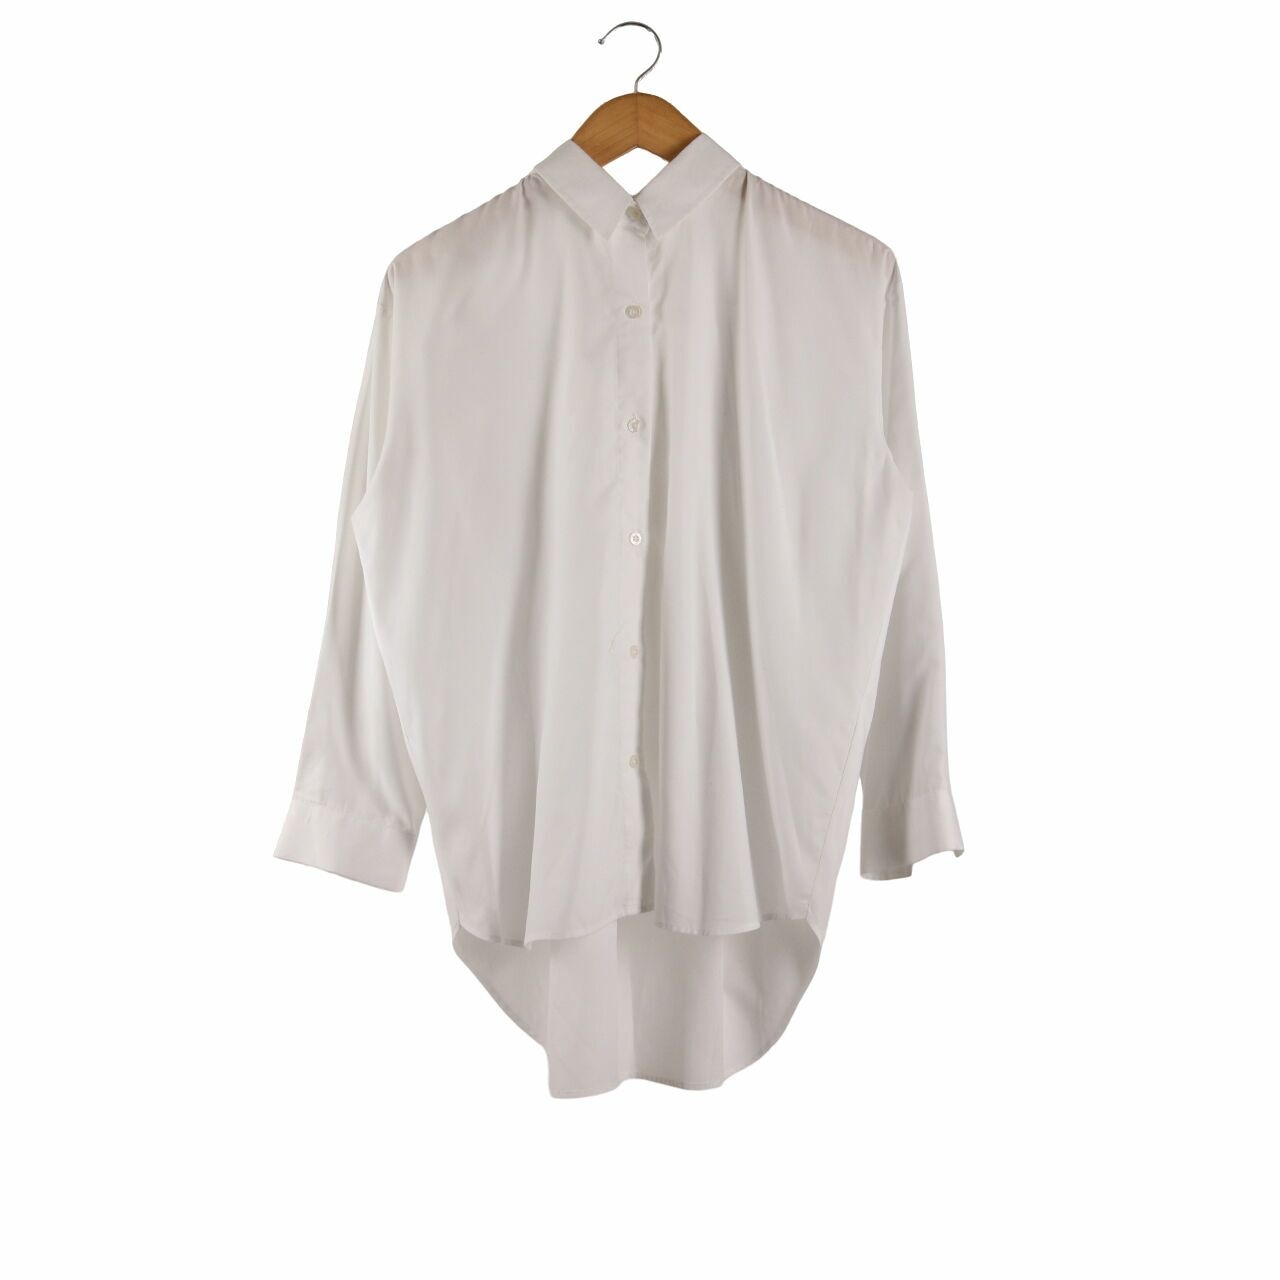 MASSHIRO&Co. White Tunik Shirt